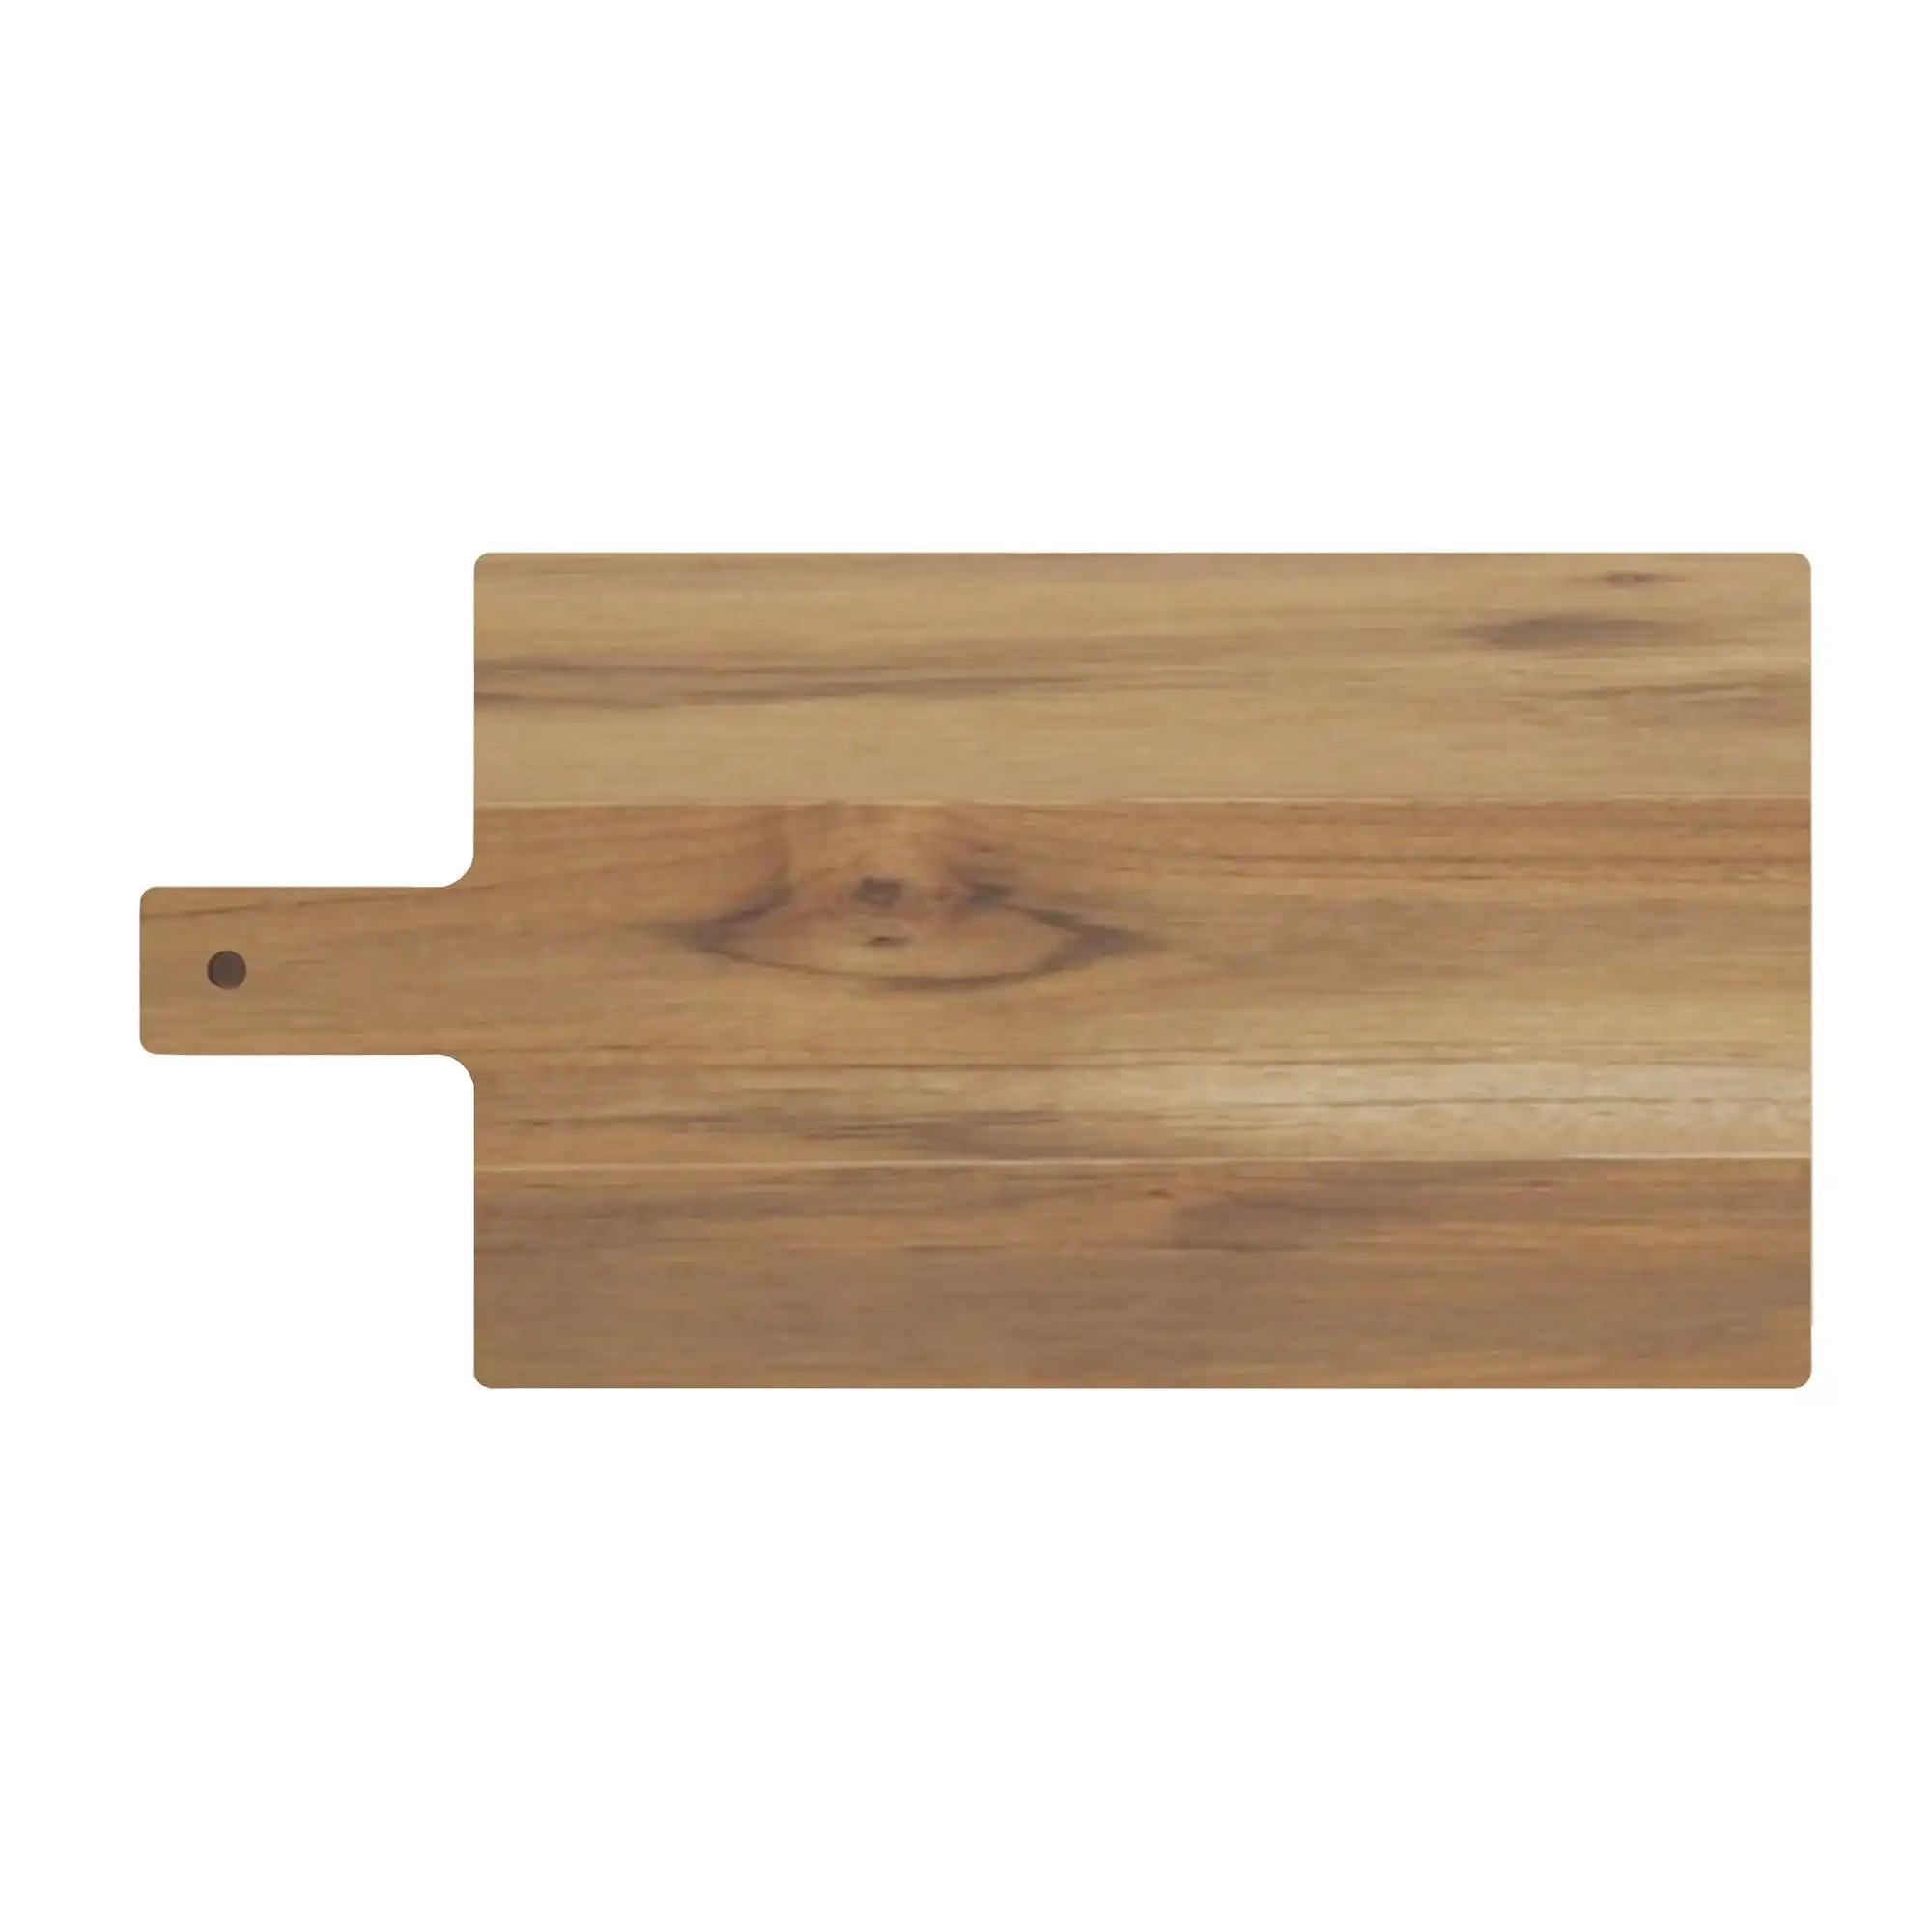 Tramontina Cutting Board Cutting Board With Handle, Teak Wood 500x250mm